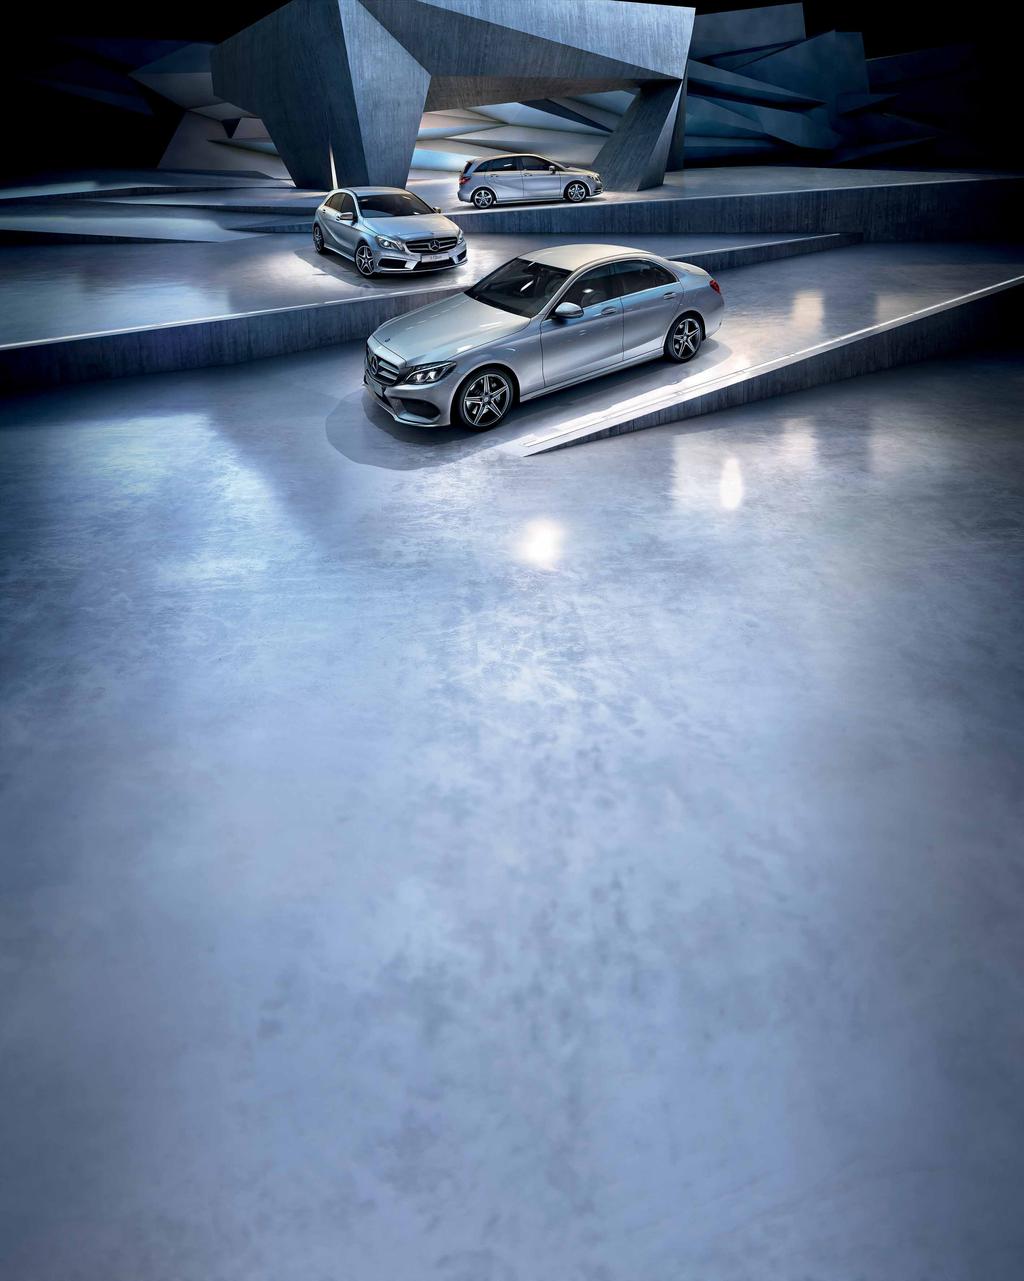 Σαν καινούργια! Τα StarClass είναι τα επιλεγμένα μεταχειρισμένα αυτοκίνητα της Mercedes-Benz. Έχουν ηλικία από 6 μήνες έως 5 χρόνια και όριο τα 100.000 χλμ.